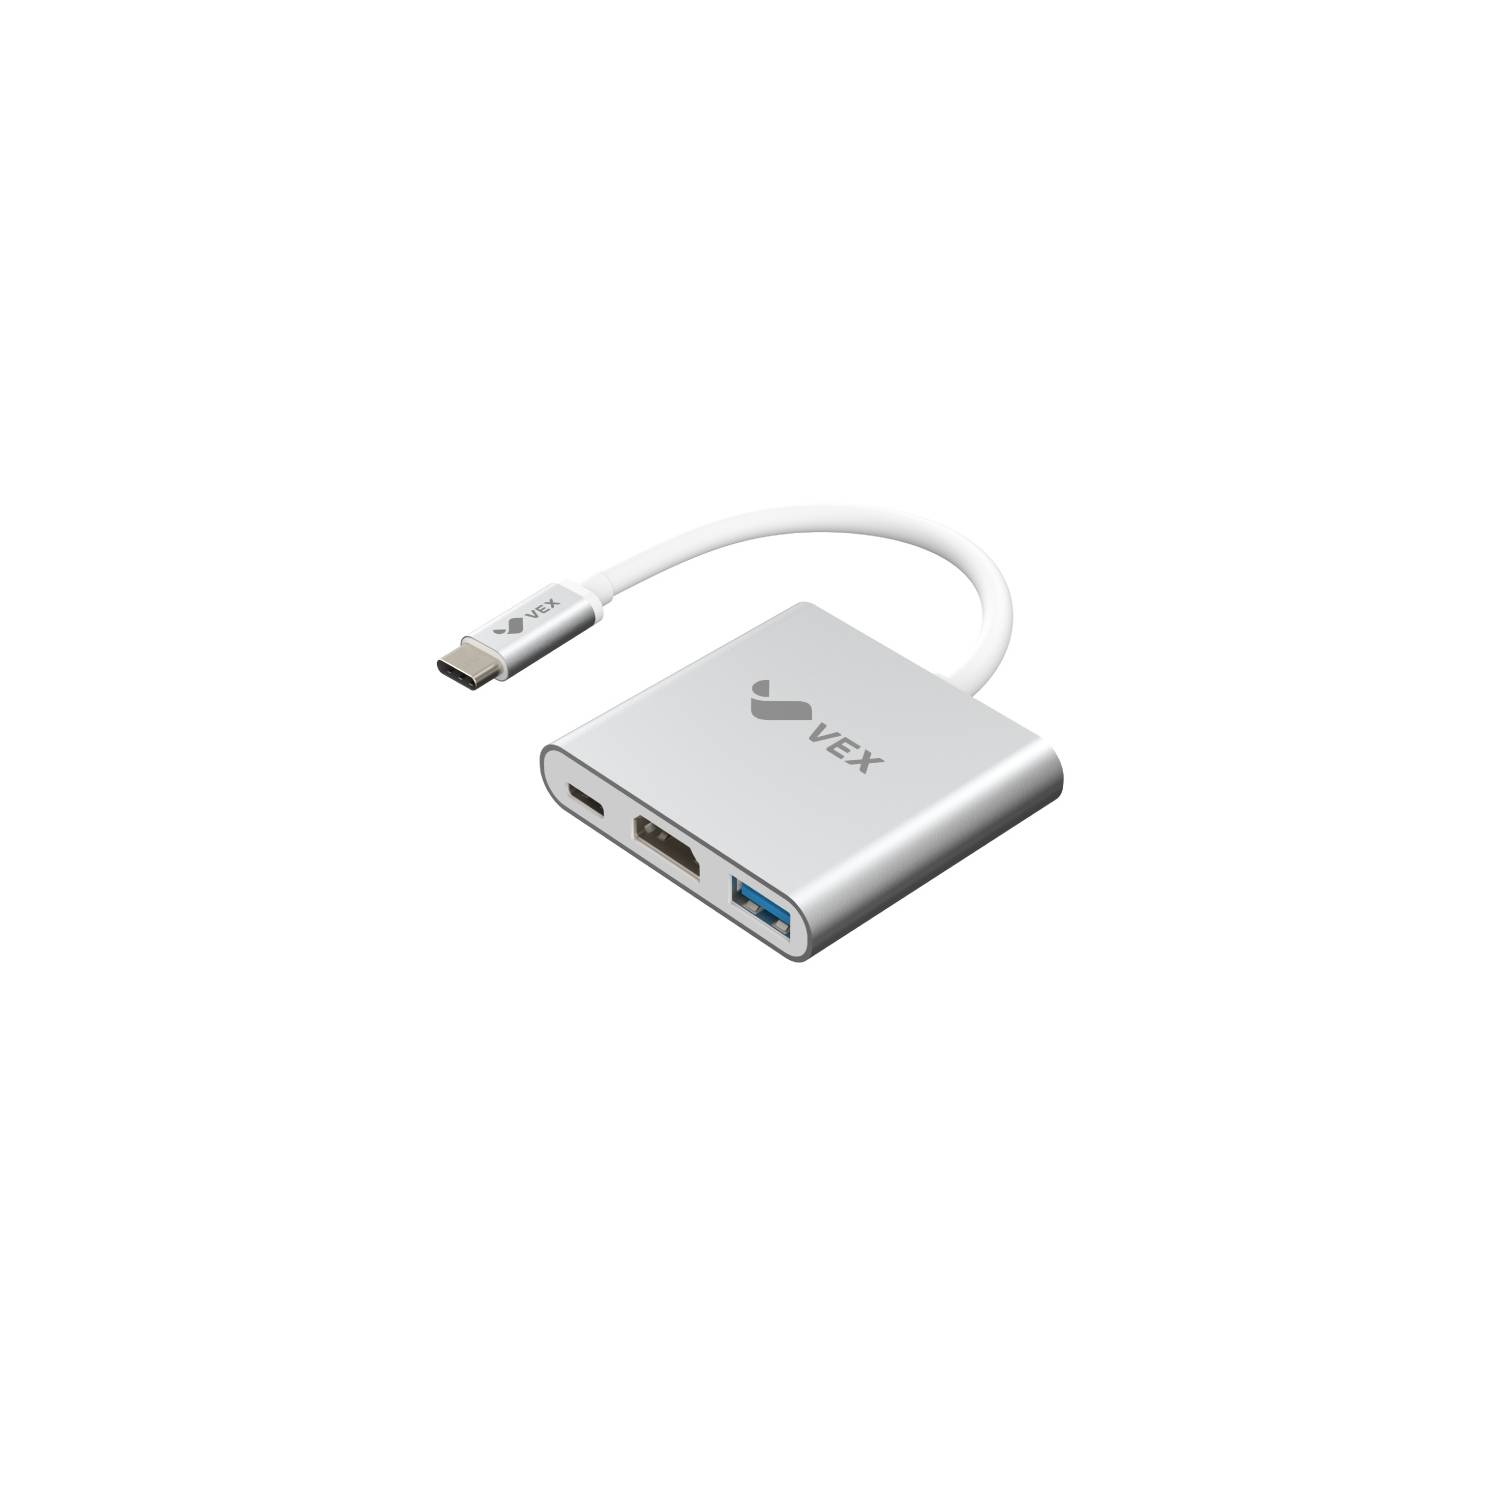 ADAPTADOR USB TIPO C A HDMI XTECH XTC-540 COLOR BLANCO